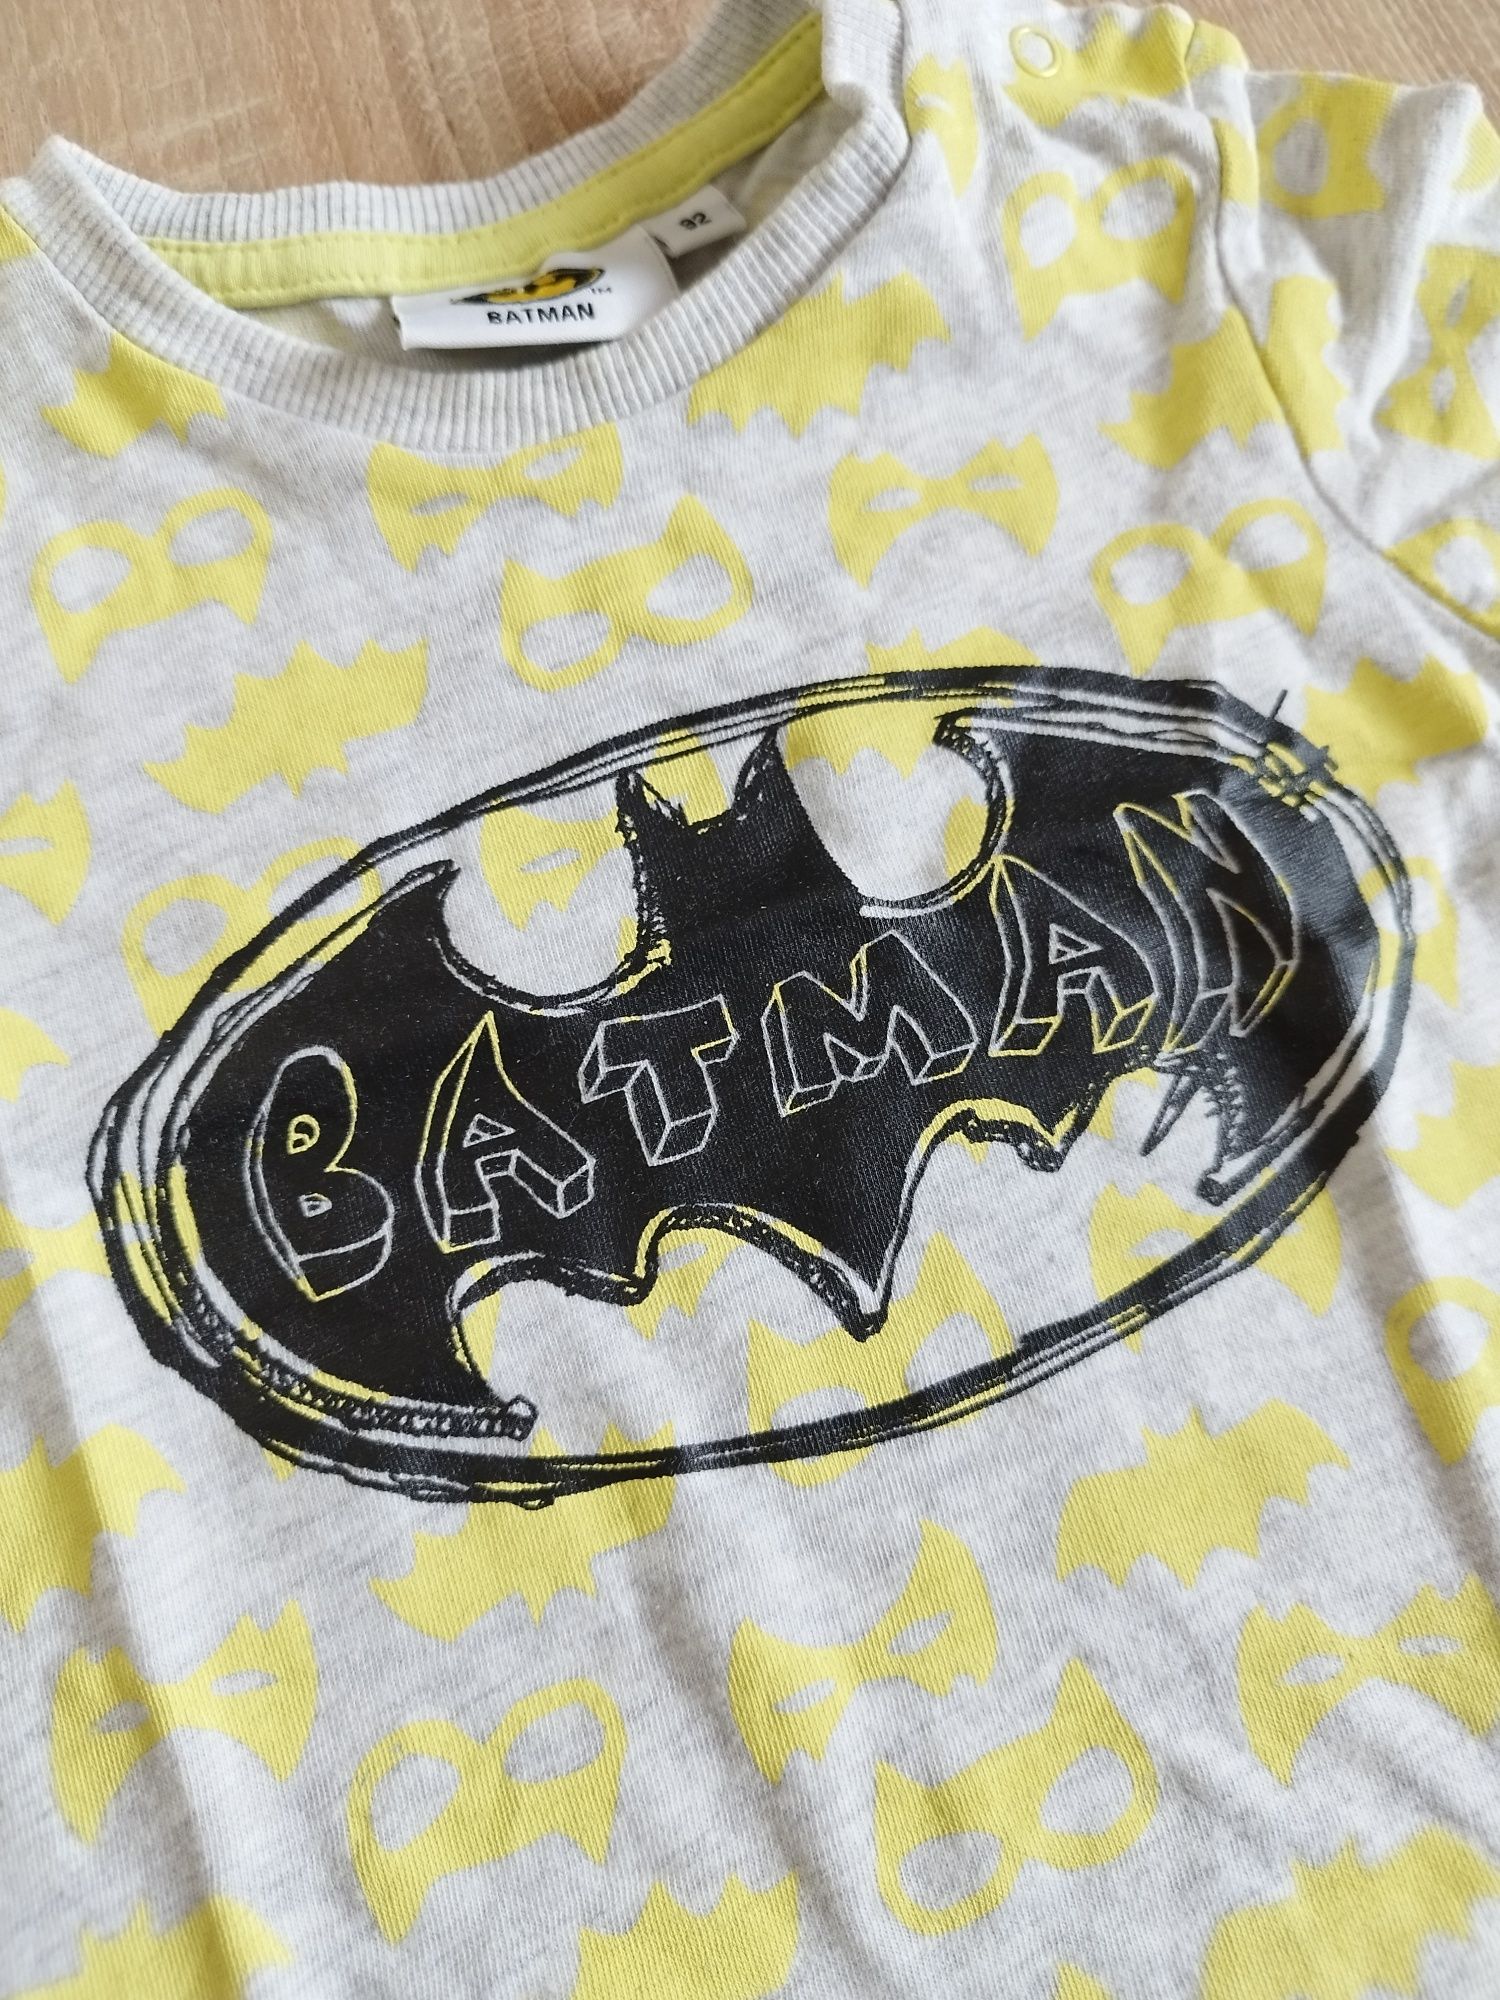 Koszulka, bluzka dla chłopca Batman R.86/92 krótki rękaw